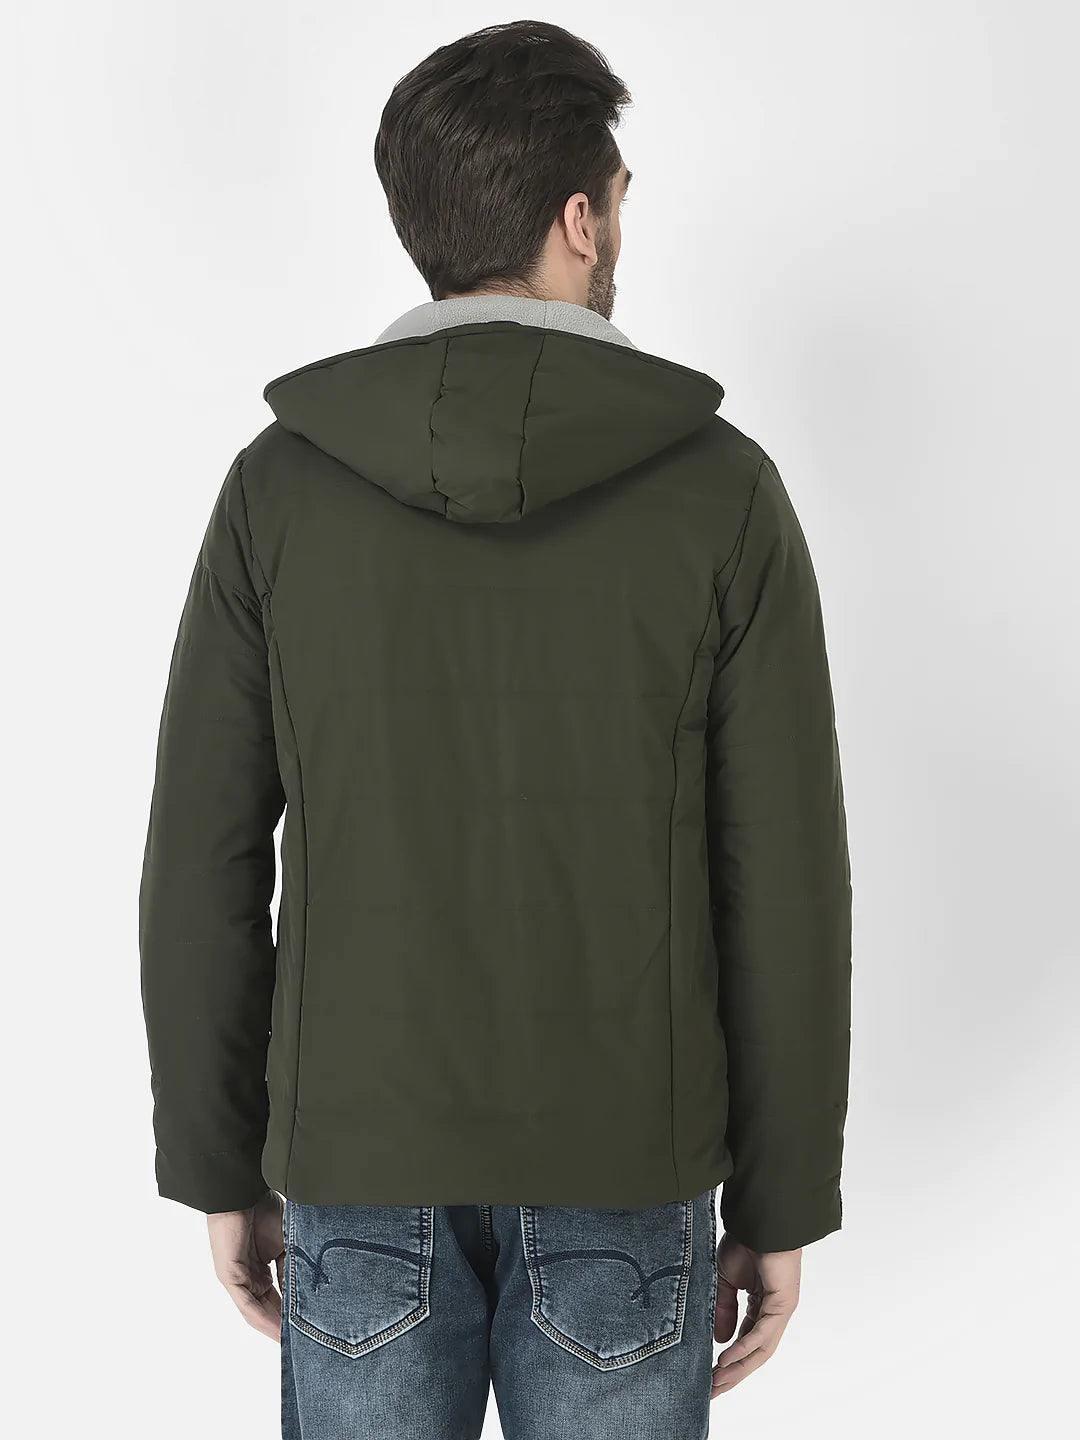  Olive Hooded Light-Padding Jacket 